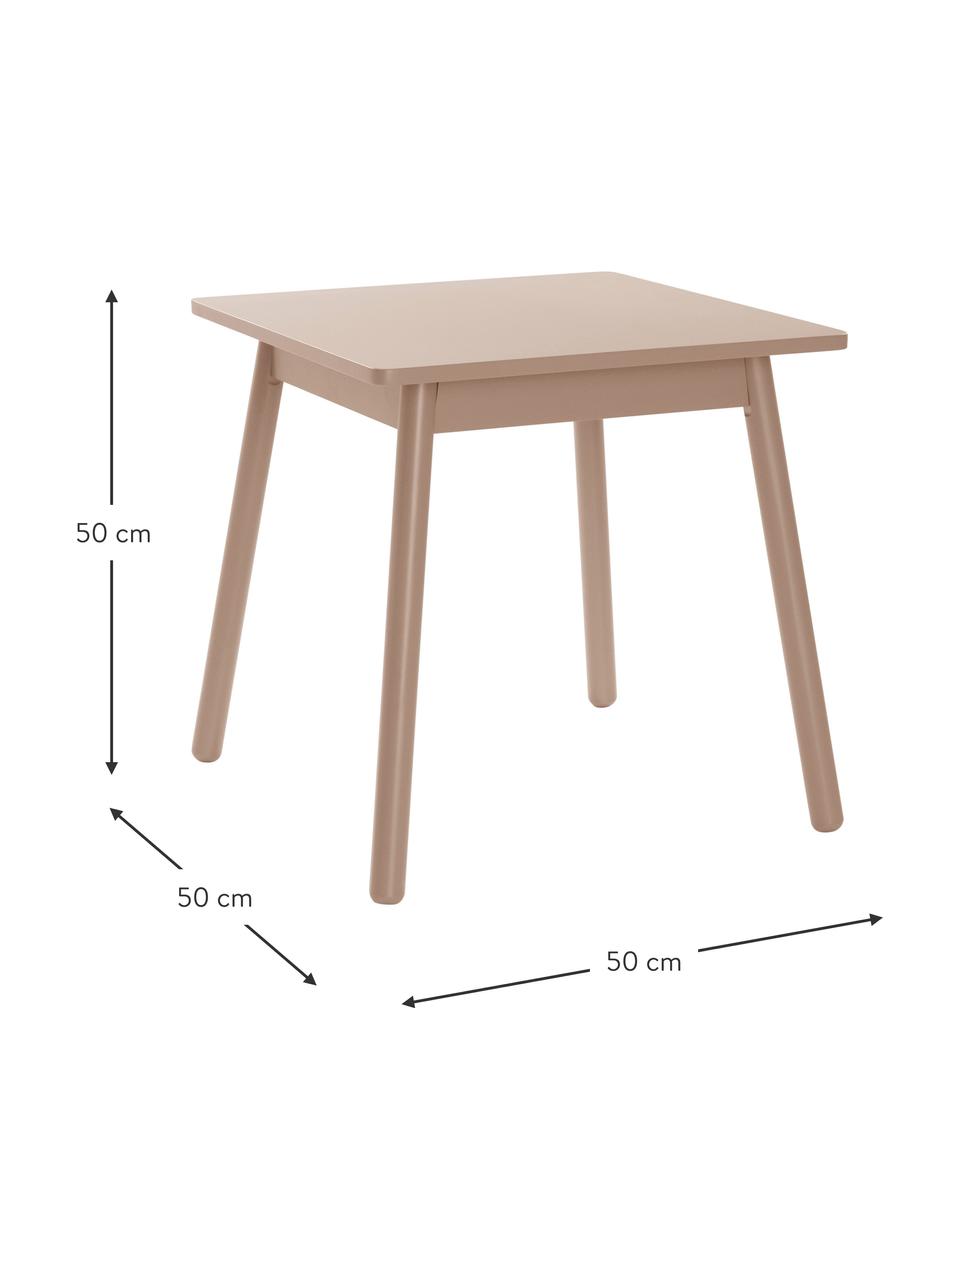 Drevený detský stôl Kinna Mini, Borovicové drevo, MDF-doska strednej hustoty, lakované, Bledoružová, Š 50 x V 50 cm